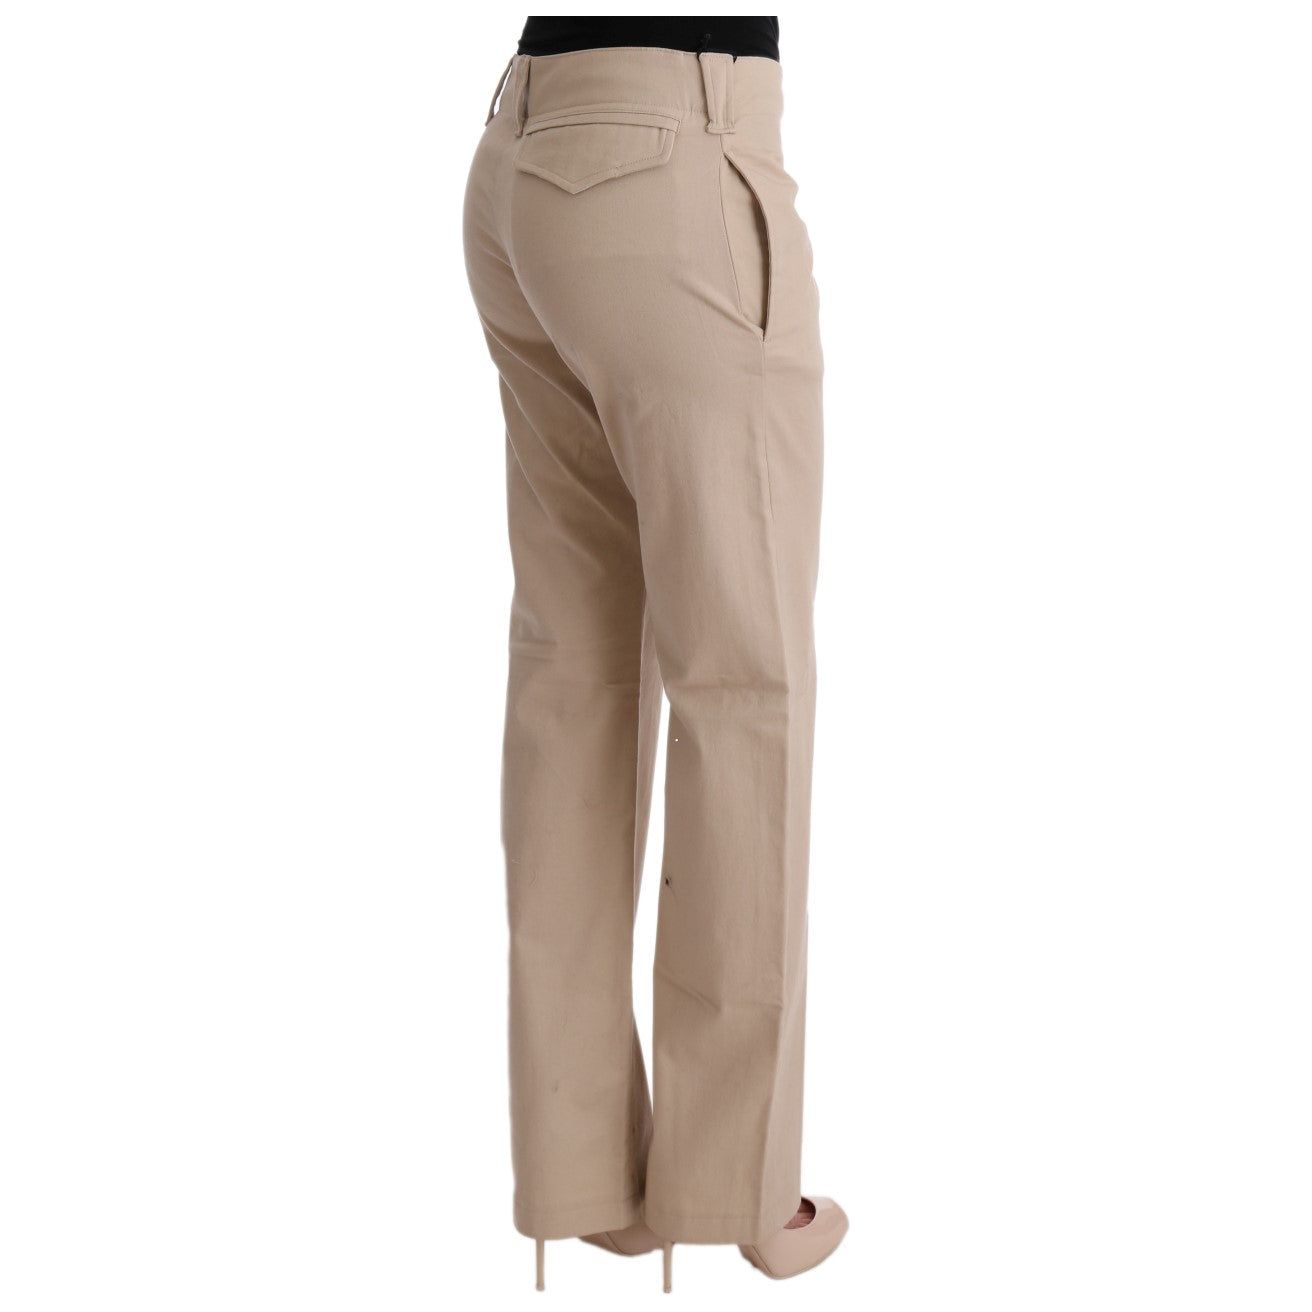 Ermanno Scervino Chic Beige Cropped Pants - Regular Fit Elegance beige-cotton-wool-regular-fit-pants Jeans & Pants 449402-beige-cotton-wool-regular-fit-pants-3.jpg